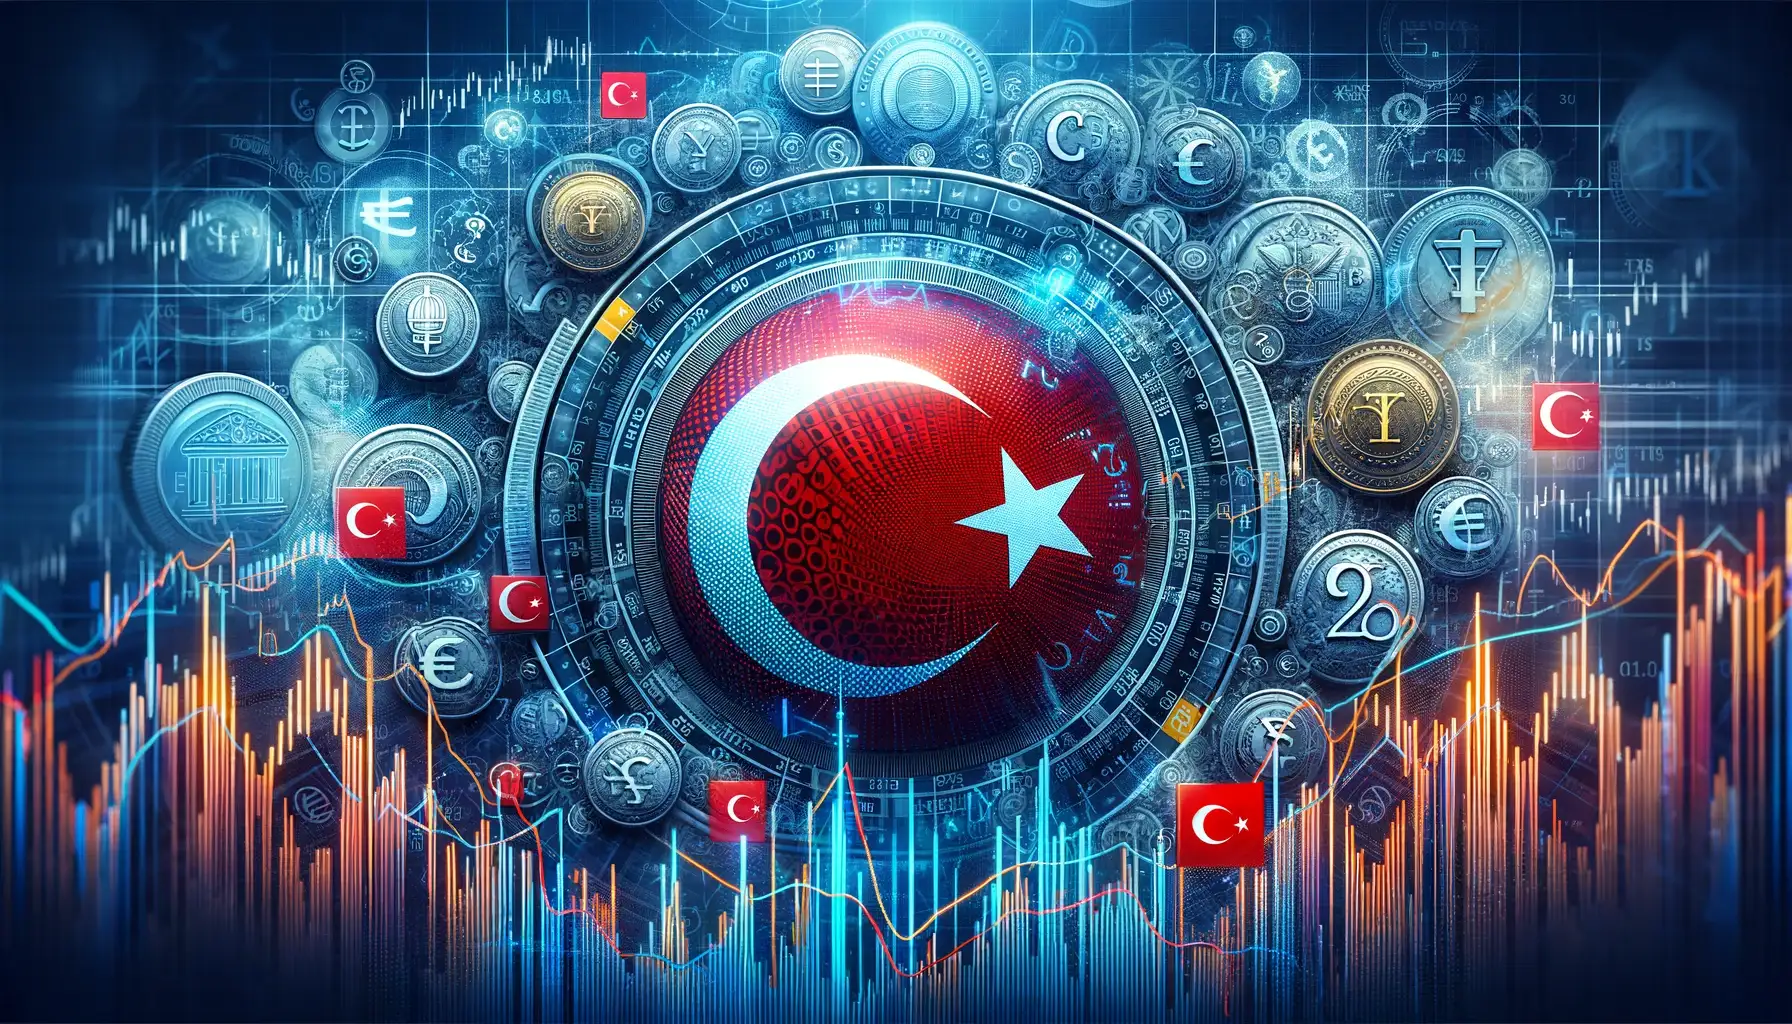 TCMB'nin Finansal Gücü ve Ulusal Ekonomiye Etkisi: Türkiye'nin Ekonomik Yol Haritası